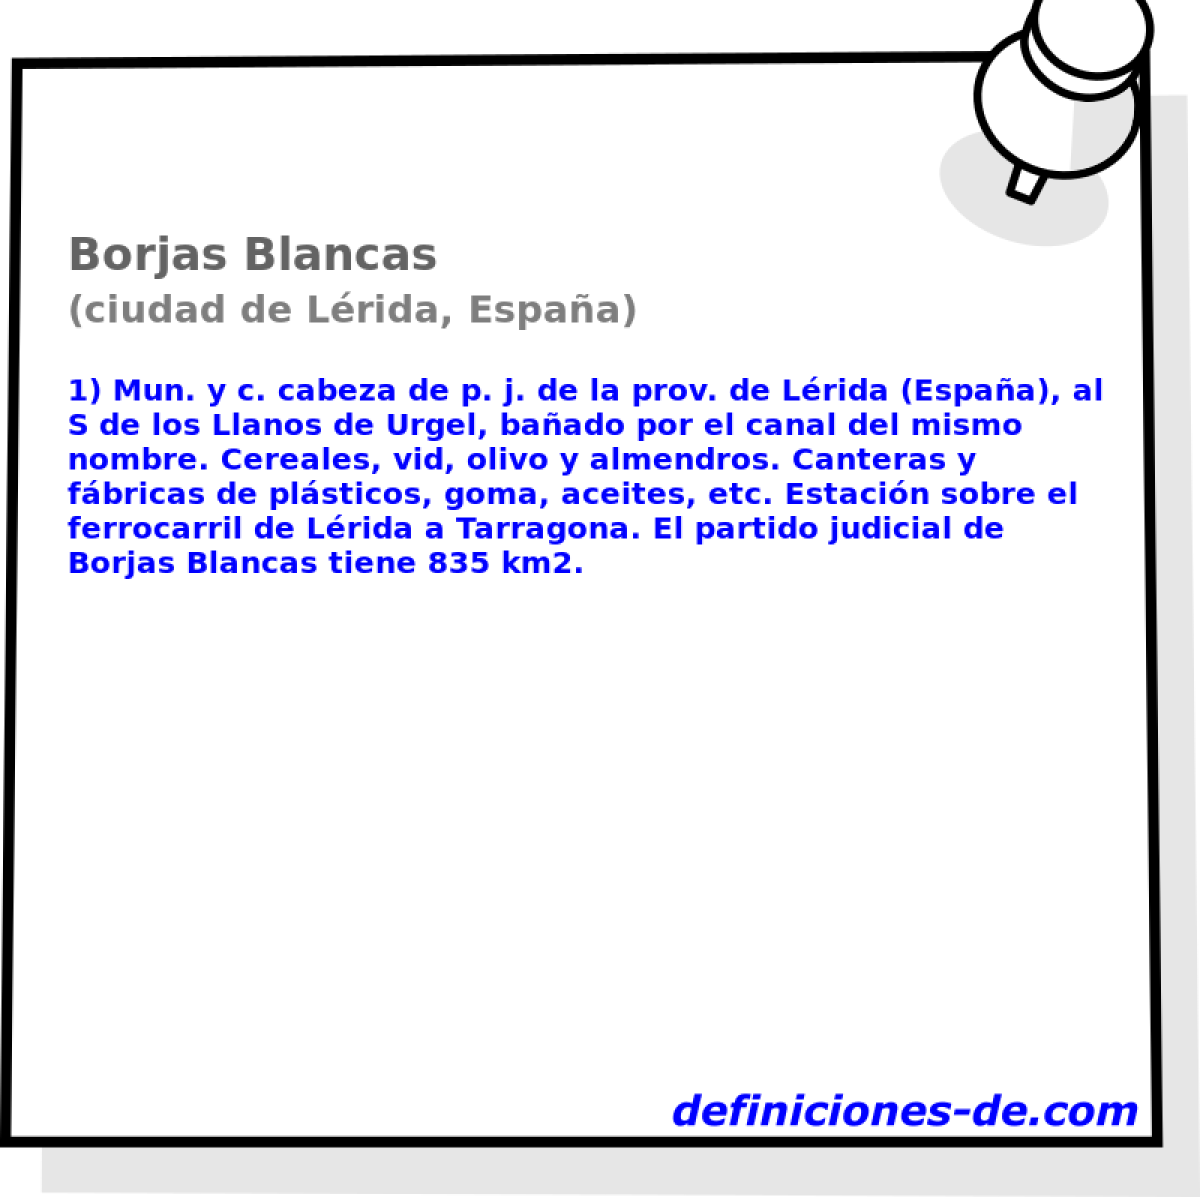 Borjas Blancas (ciudad de Lrida, Espaa)